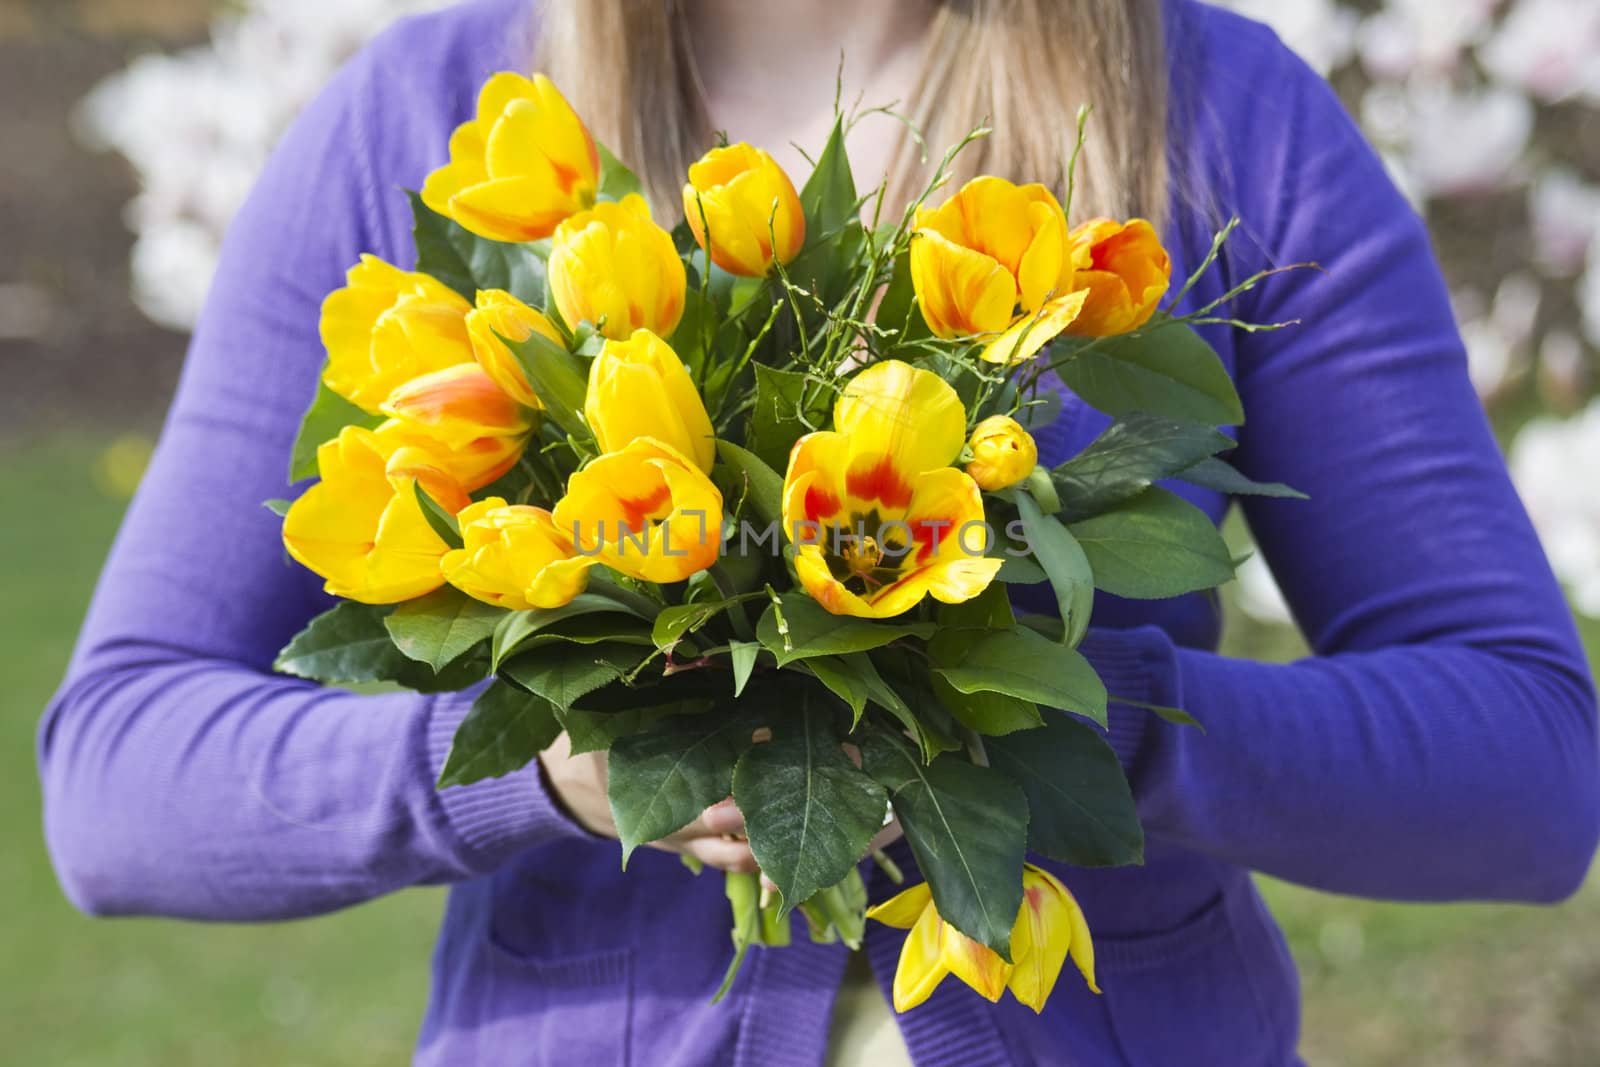 Bunch of tulips in woman's hands